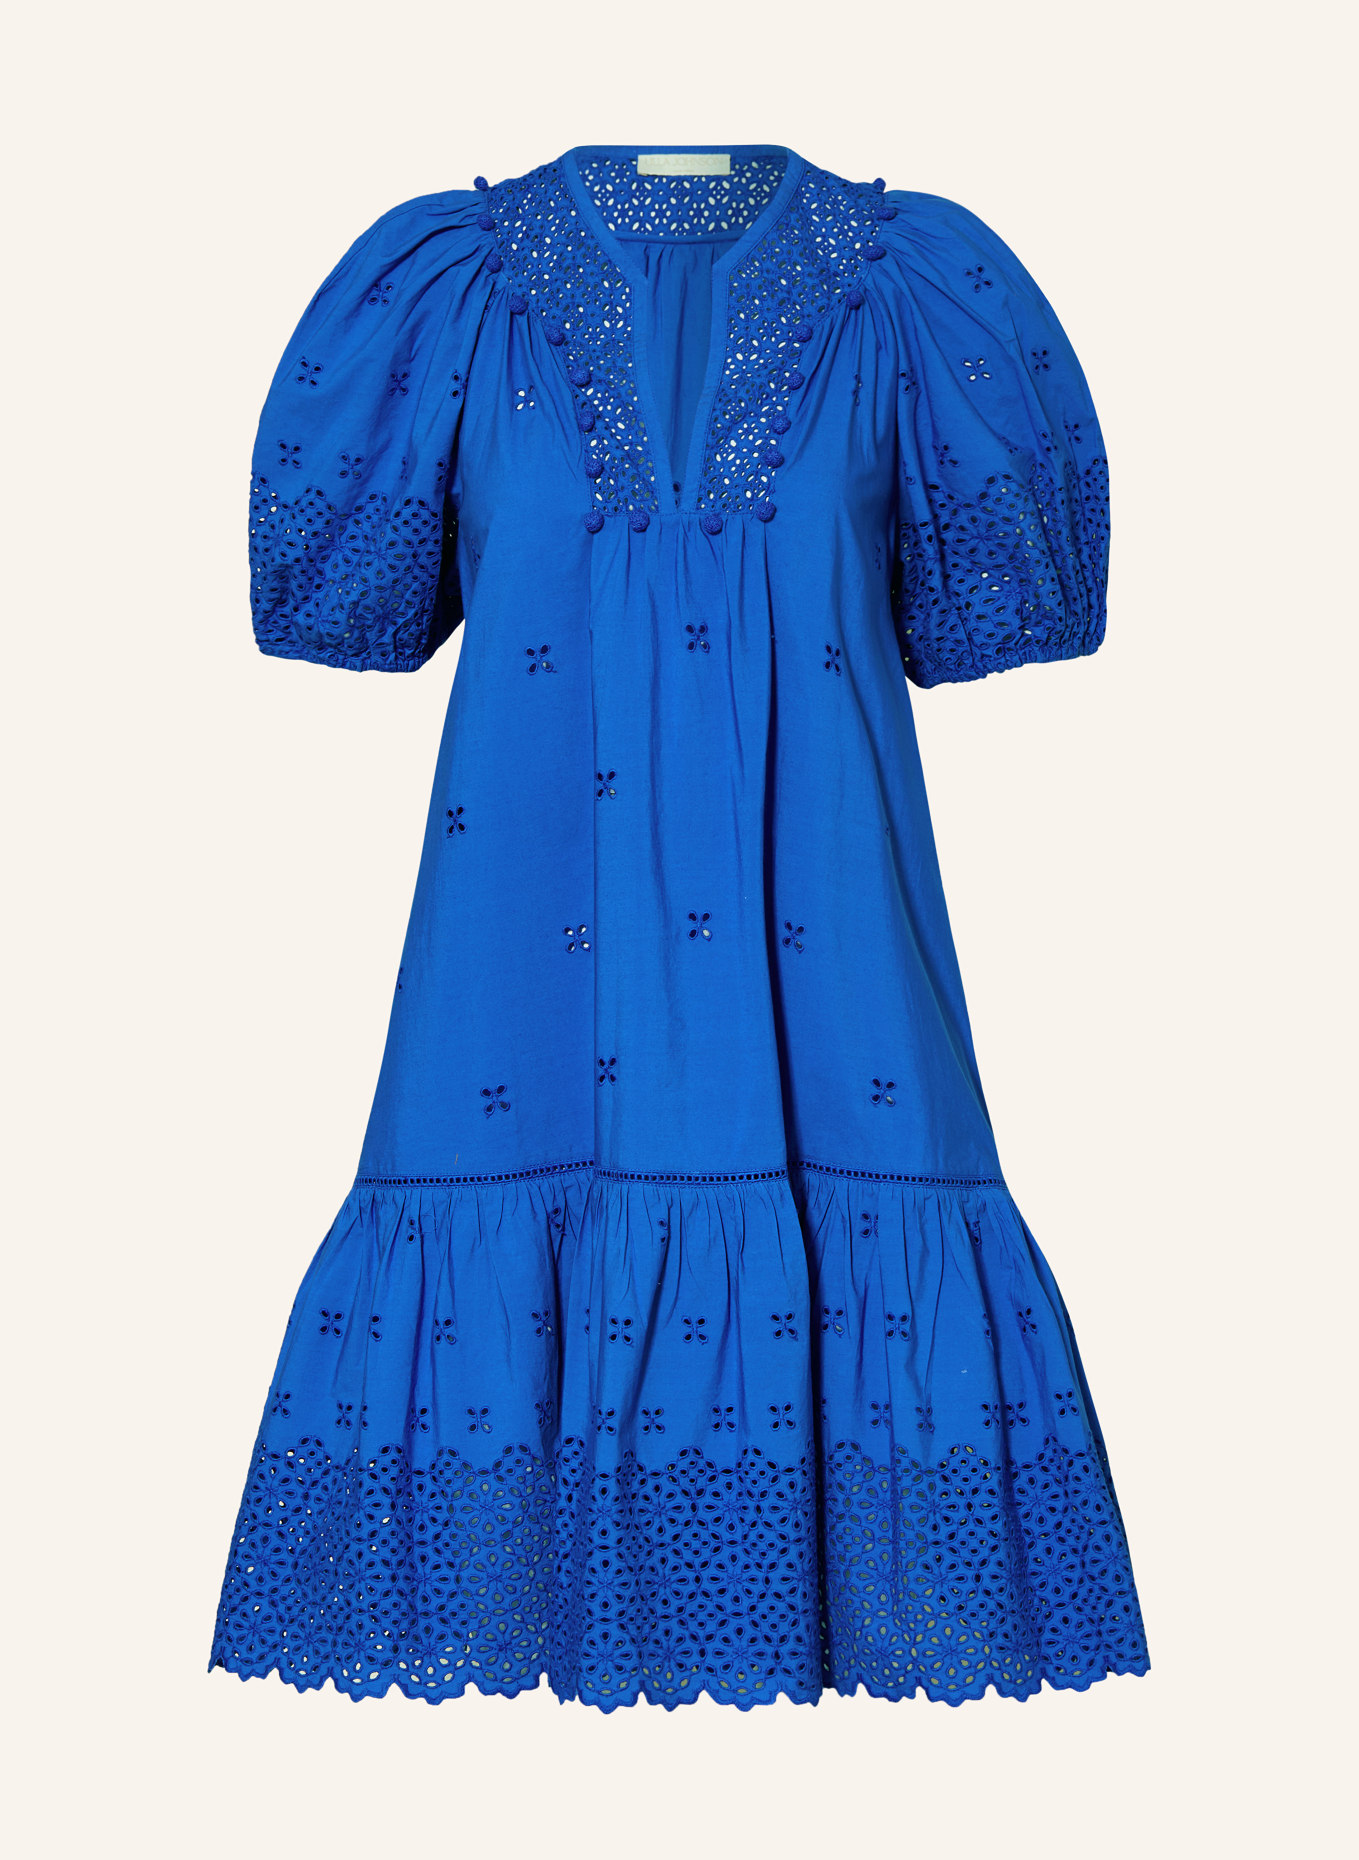 ULLA JOHNSON Kleid AURORA mit Spitze, Farbe: BLAU (Bild 1)